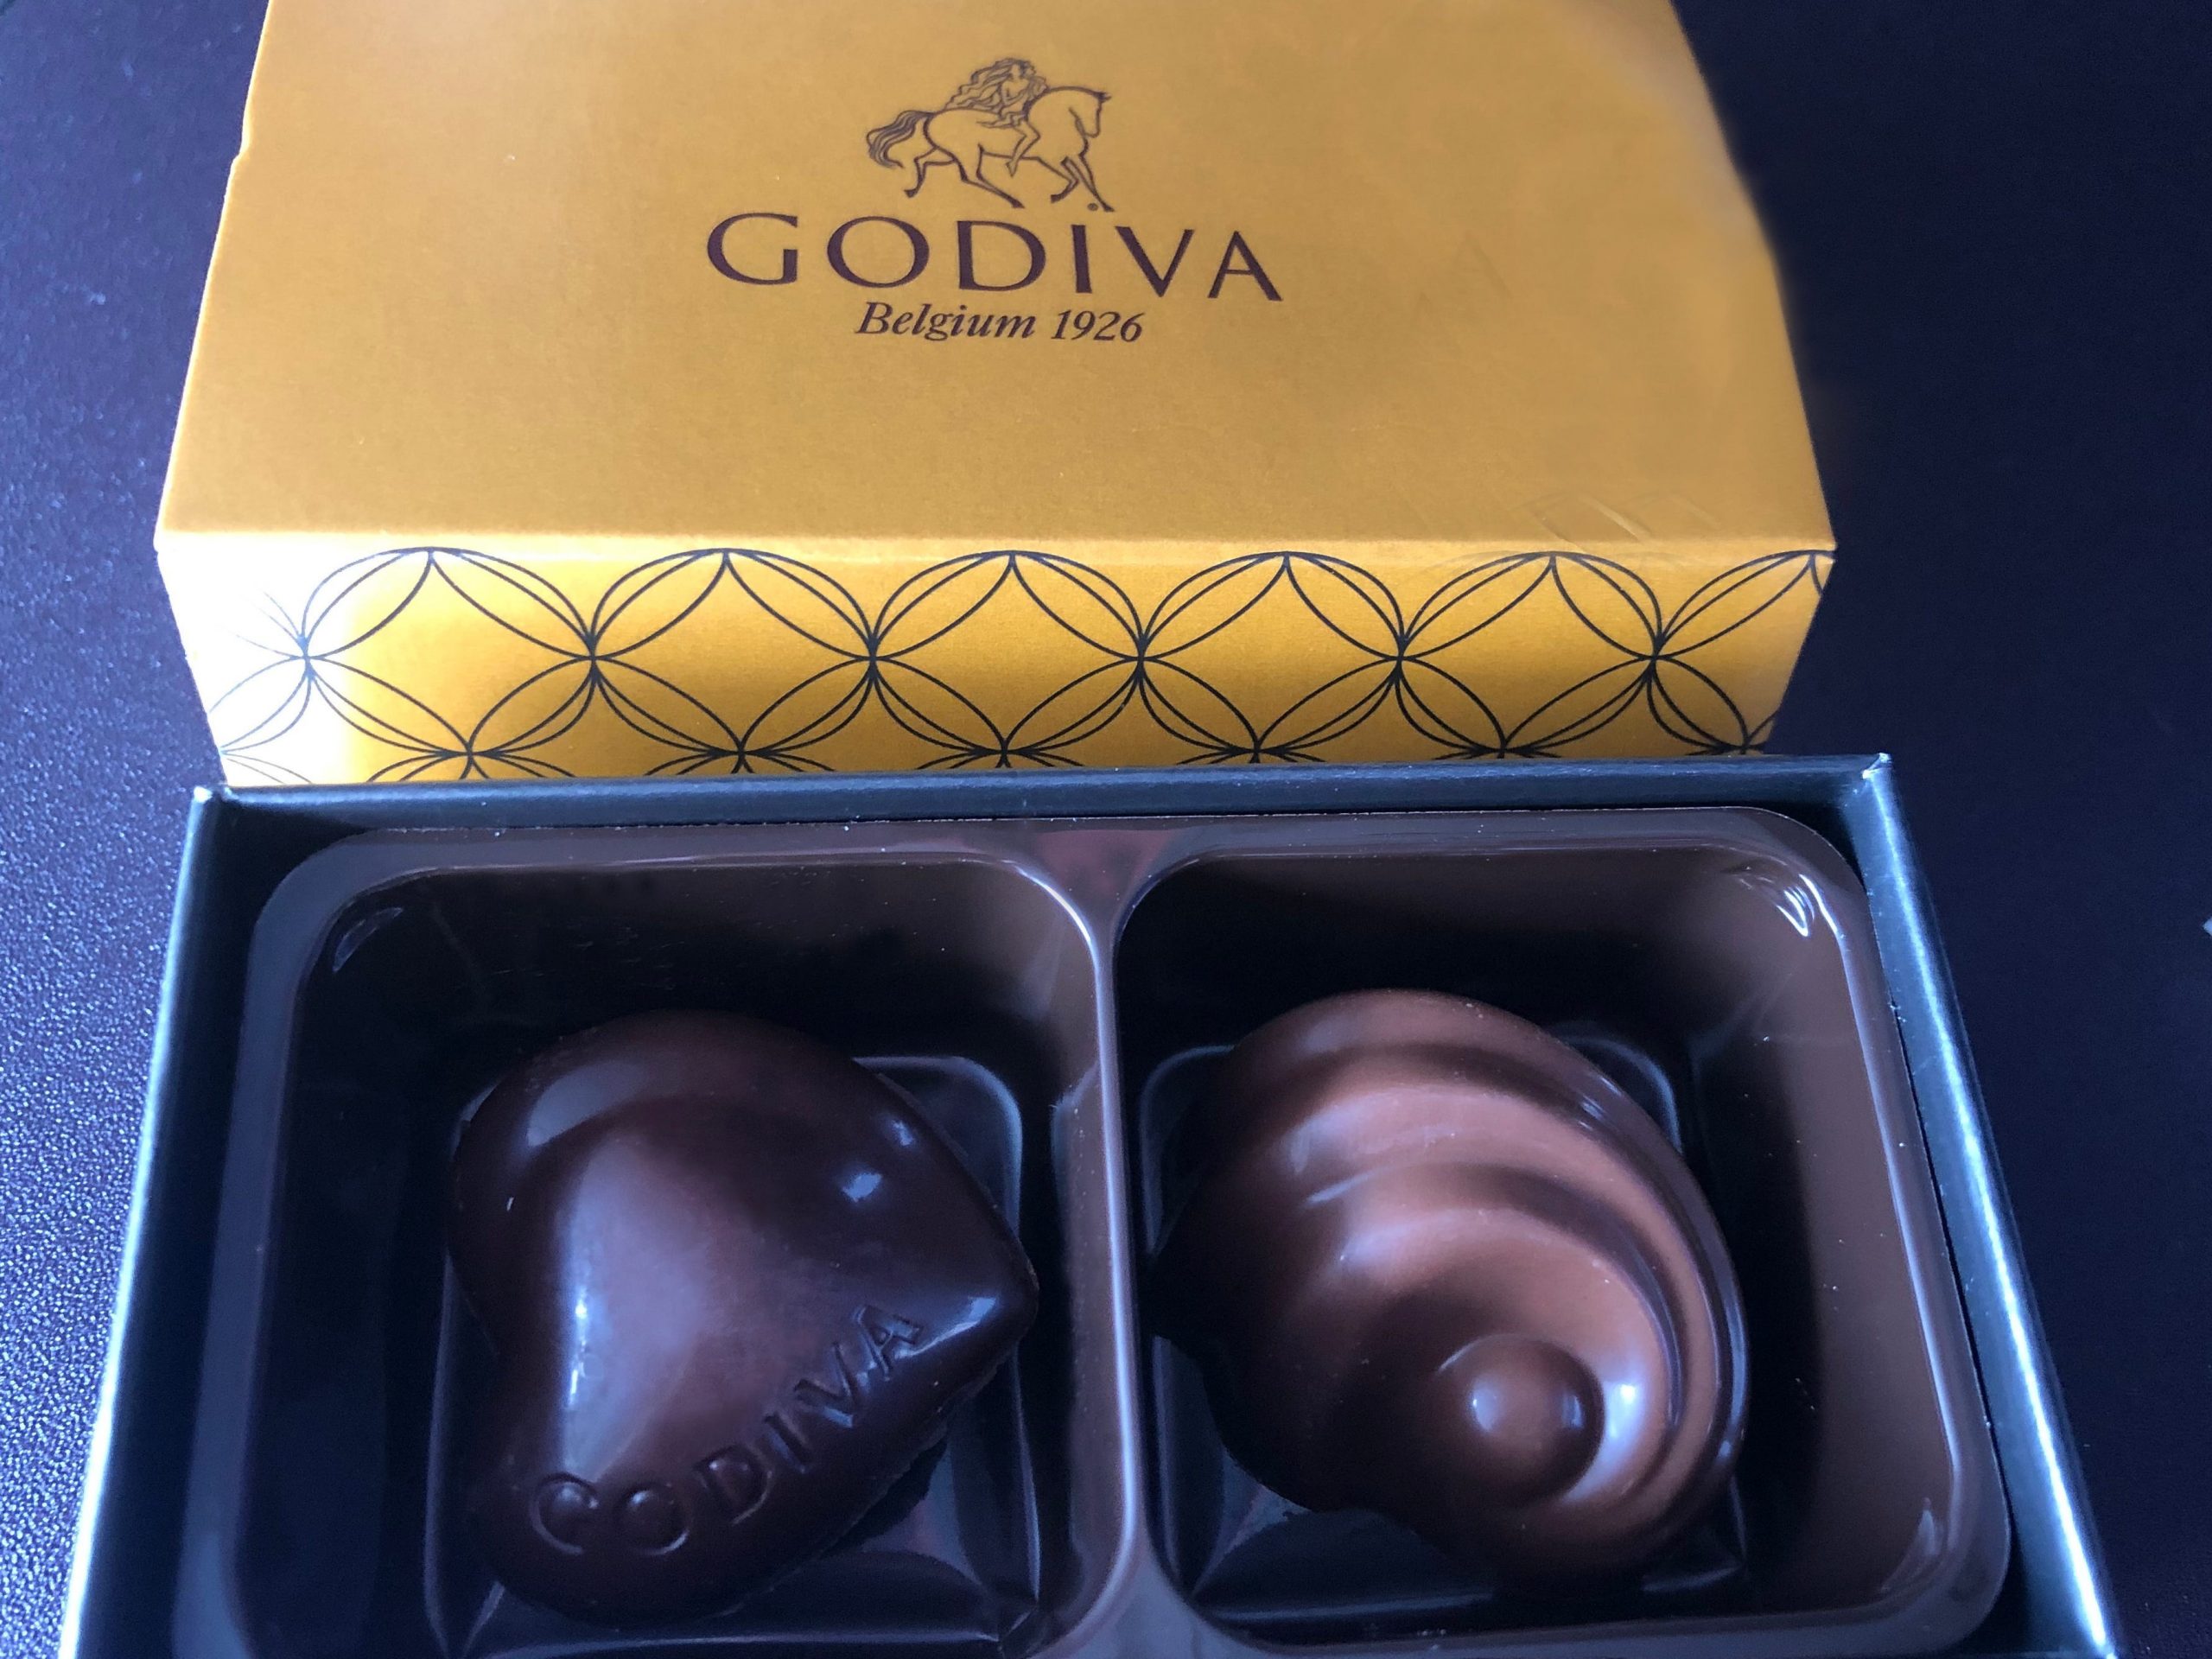 Godiva chocolates and box